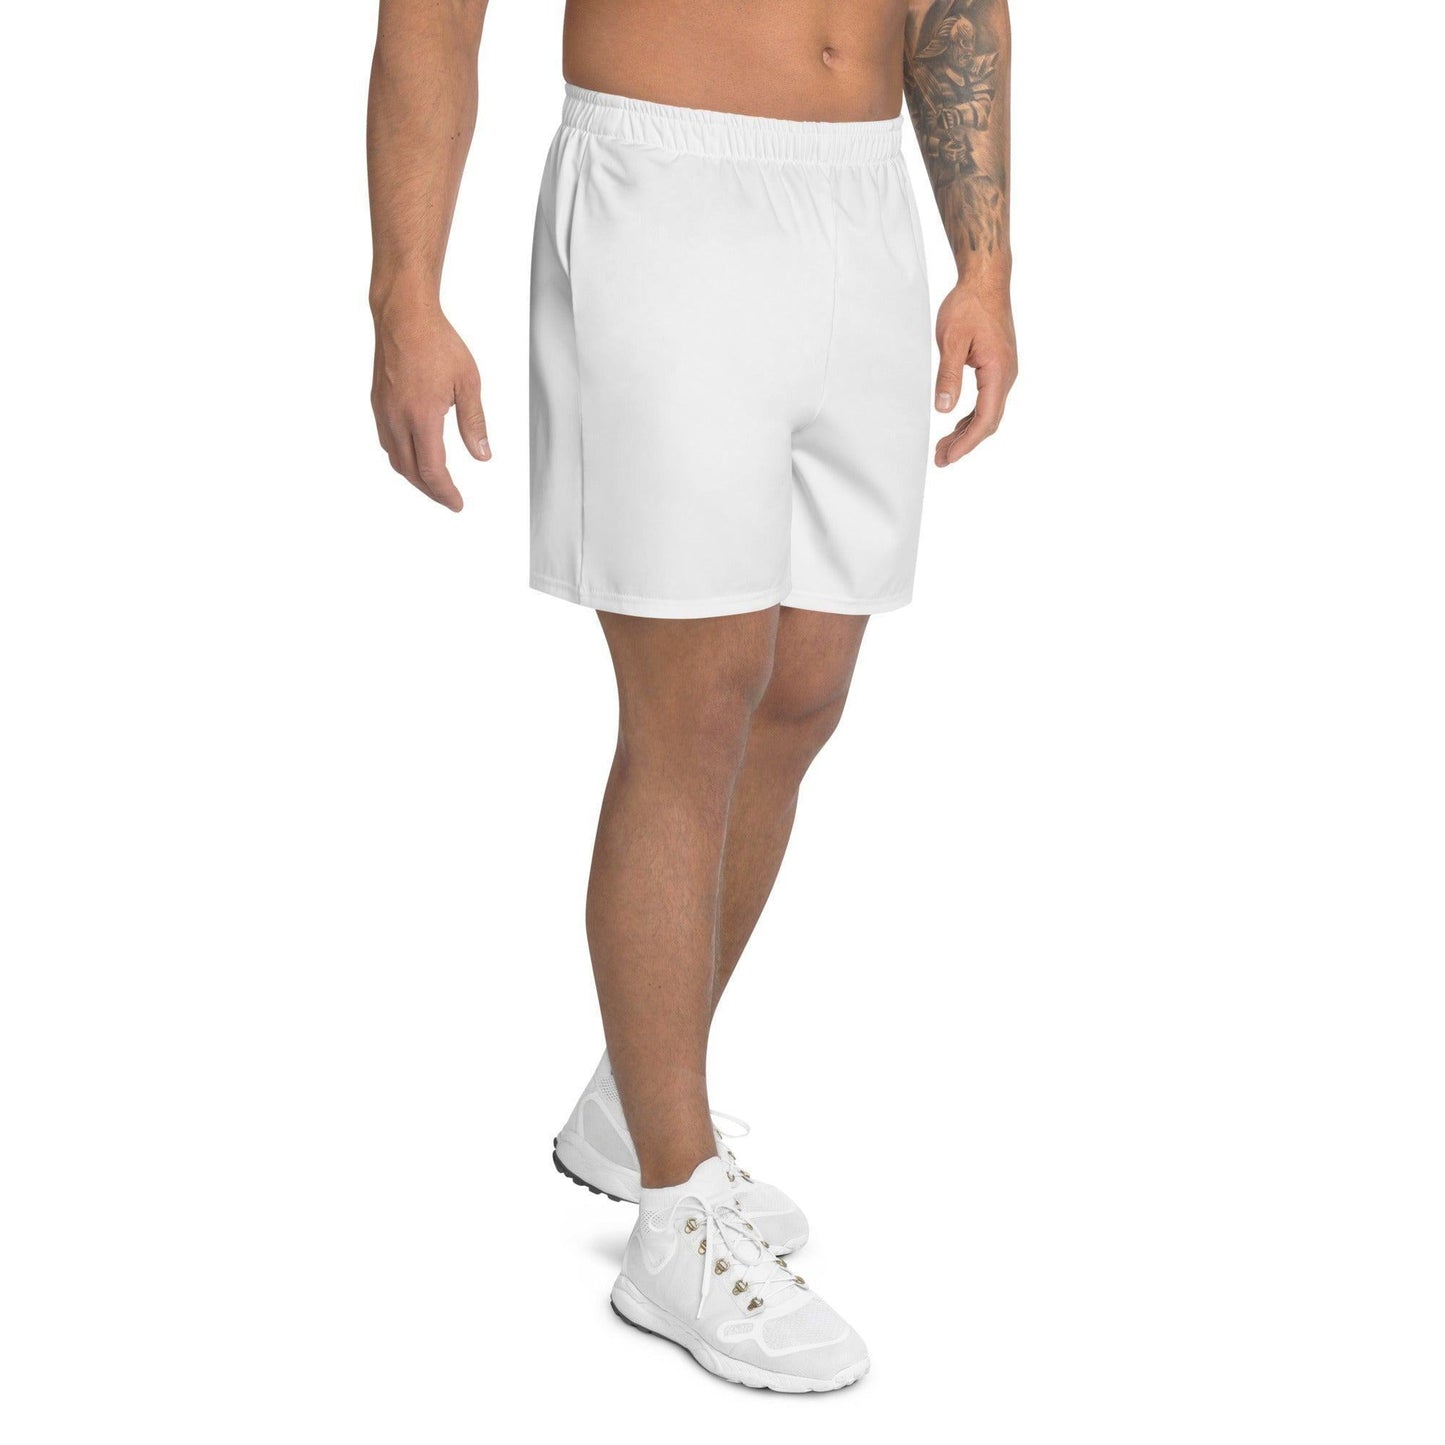 Weiße Herren Sport Shorts -- Weiße Herren Sport Shorts - undefined Sport Shorts | JLR Design